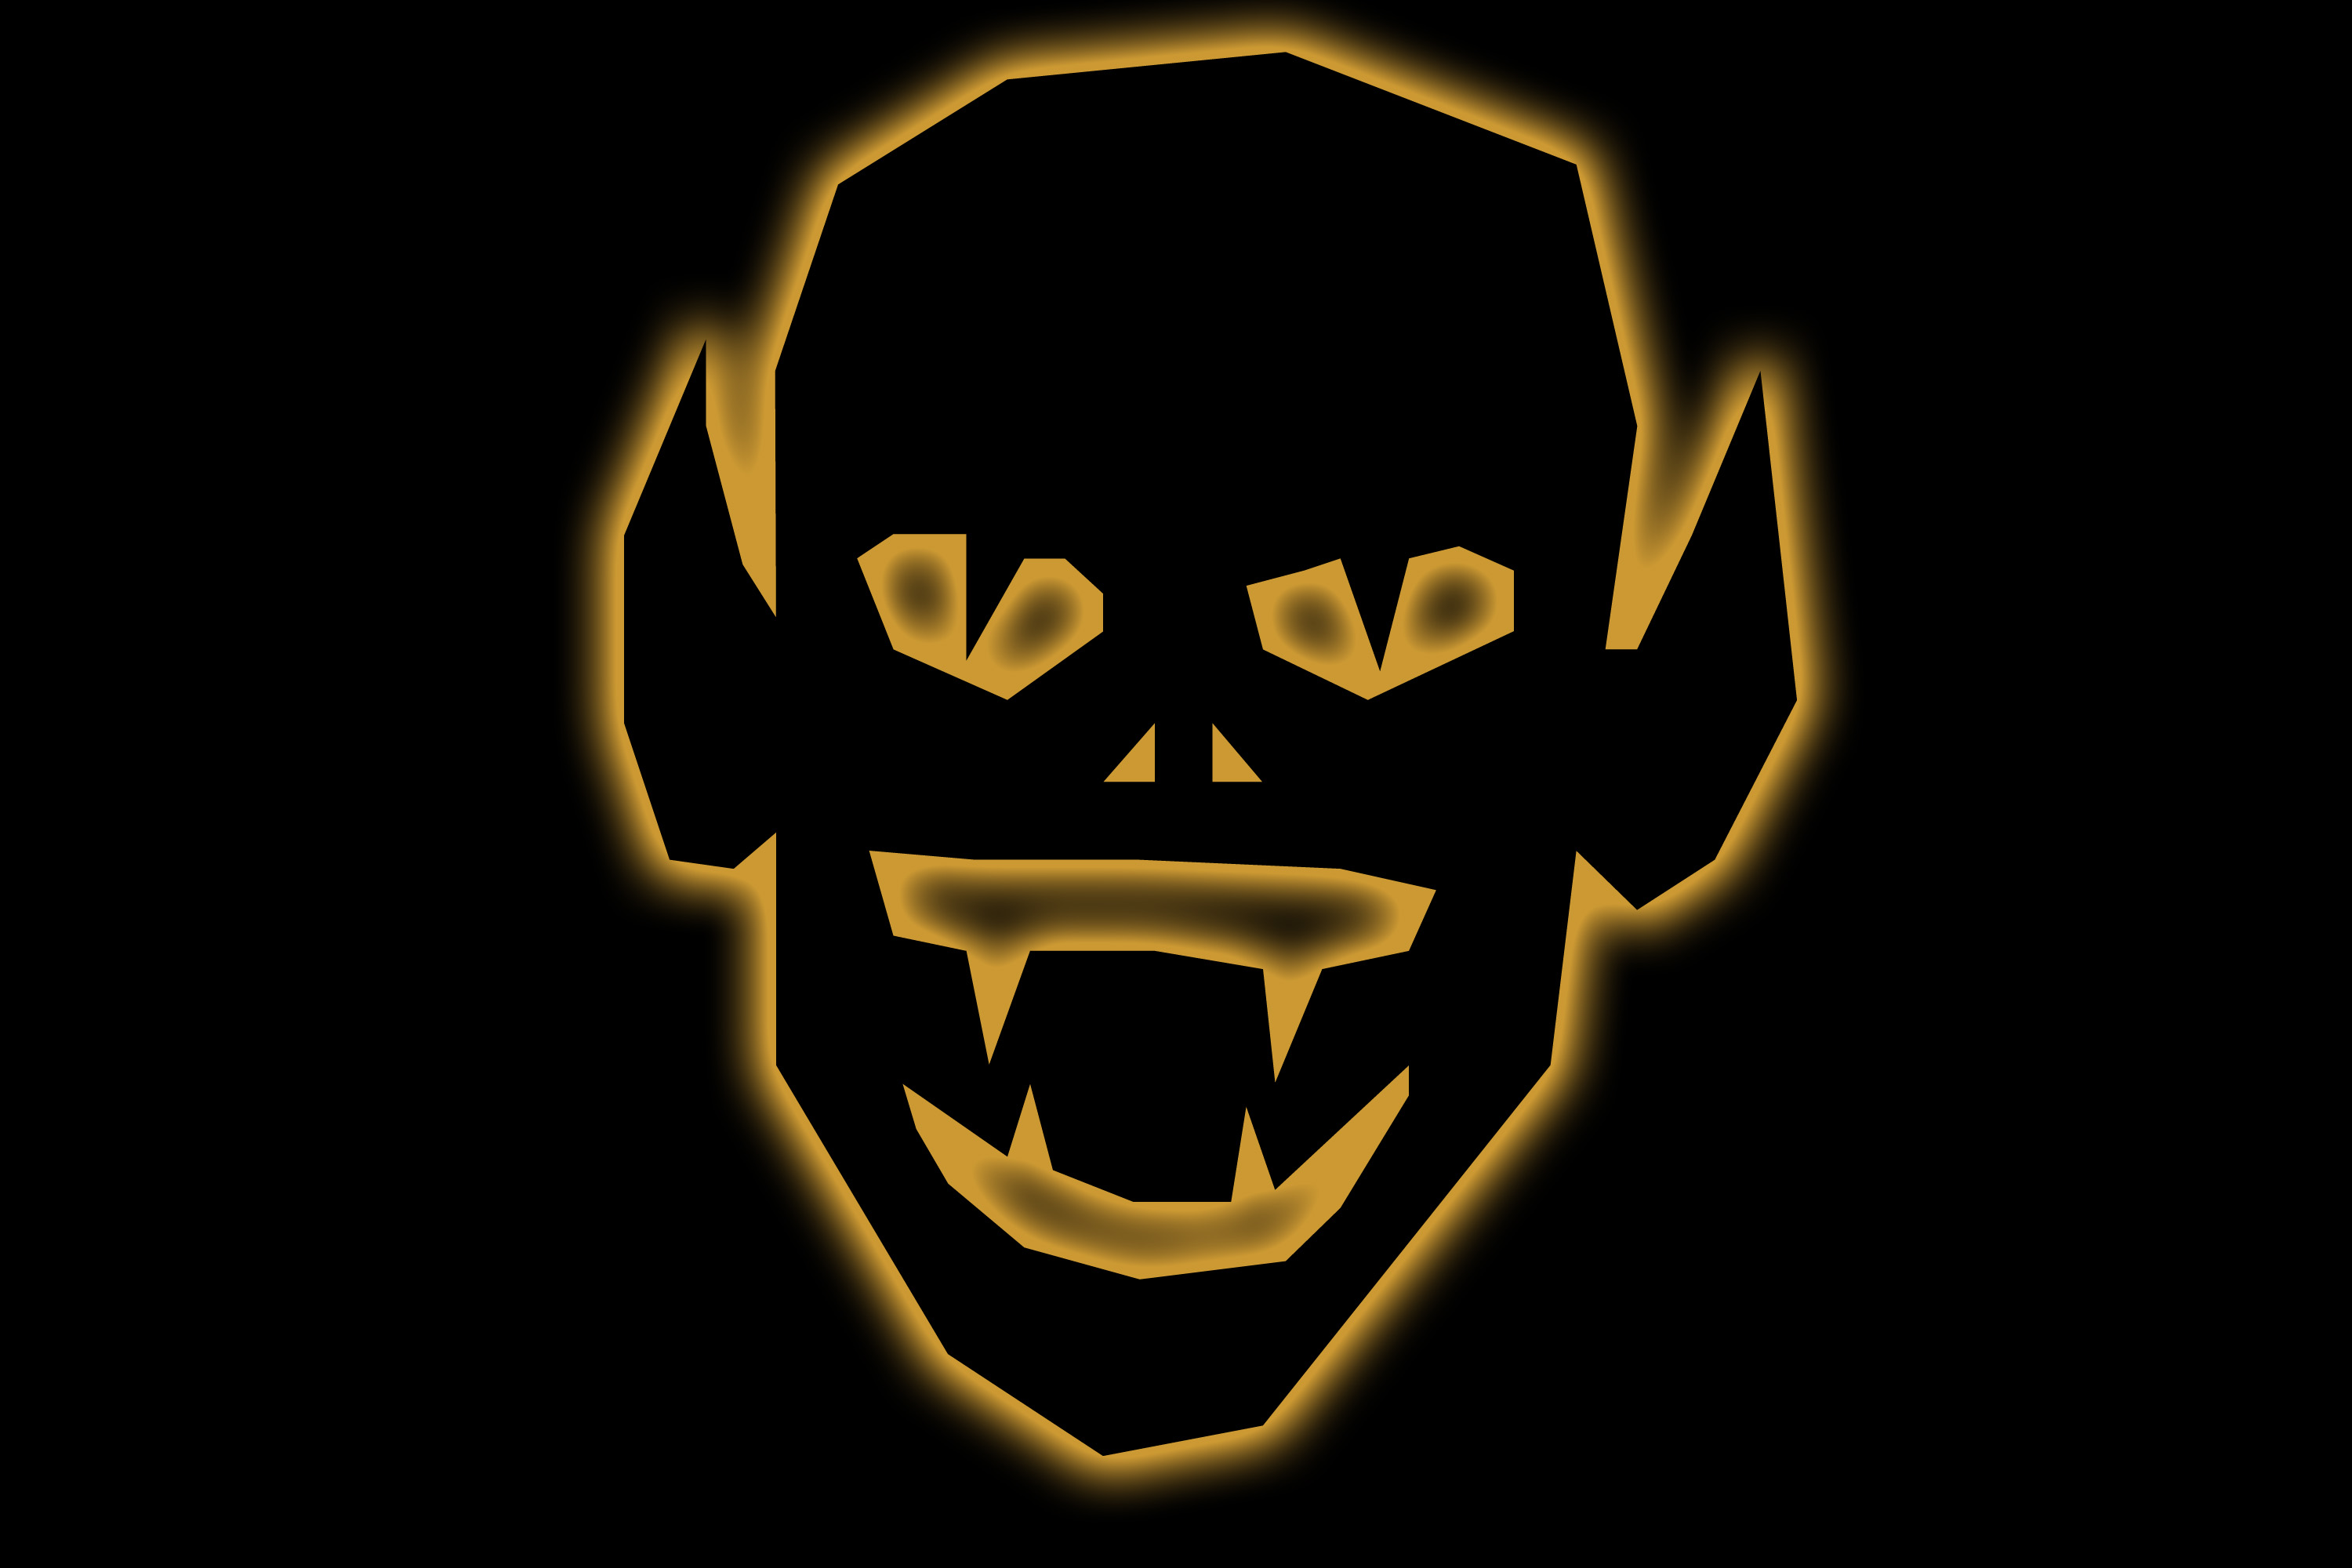 Description Evil Goblin Face Keywords Clipart Pointed Ears Teeth Eyes    